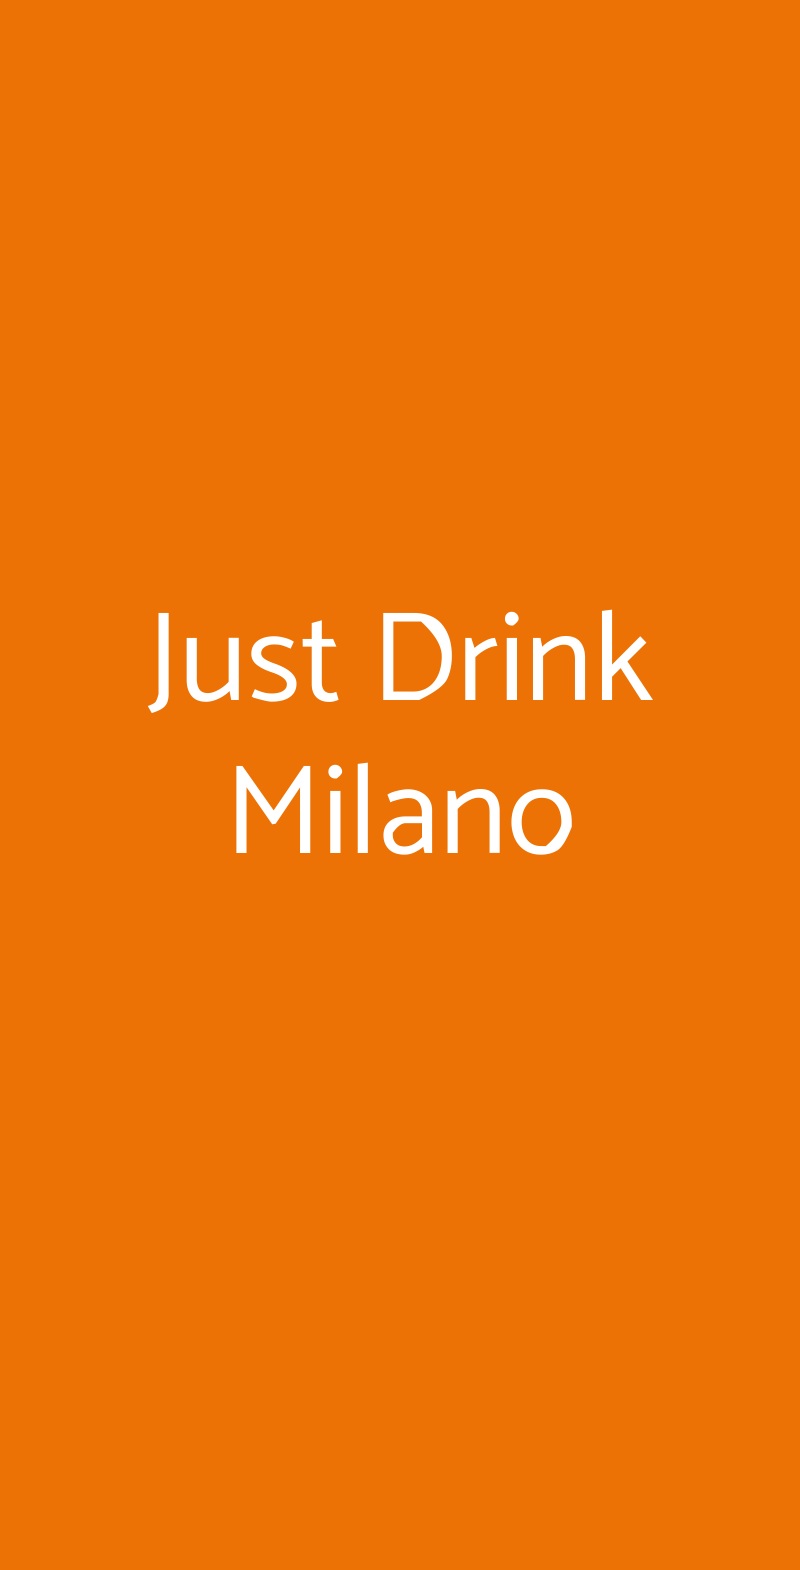 Just Drink Milano Paderno Dugnano menù 1 pagina